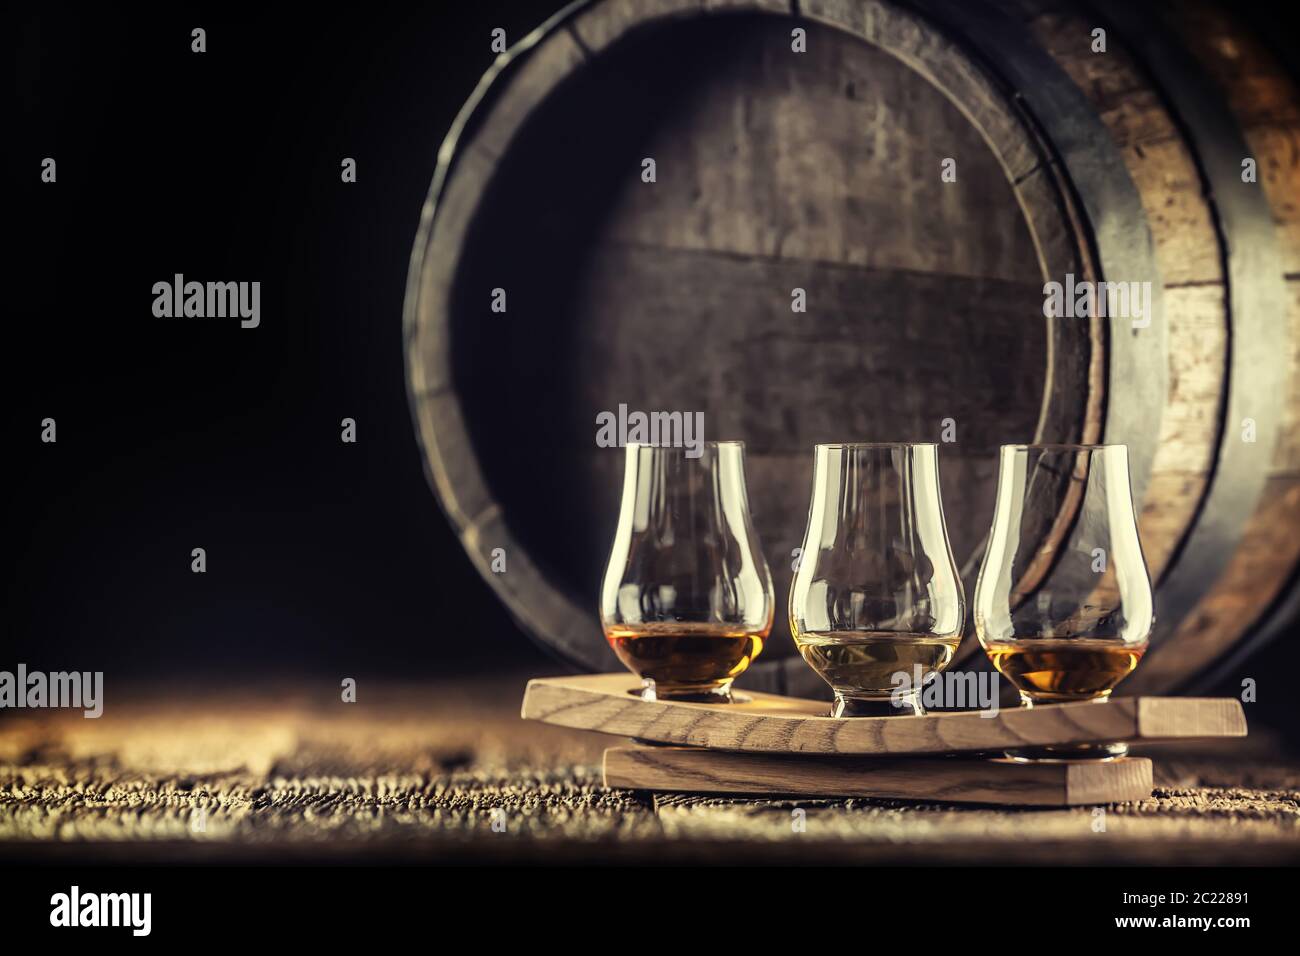 Coupes de dégustation de whisky Glencairn sur un service en bois, avec un fût de whisky dans un fond sombre Banque D'Images